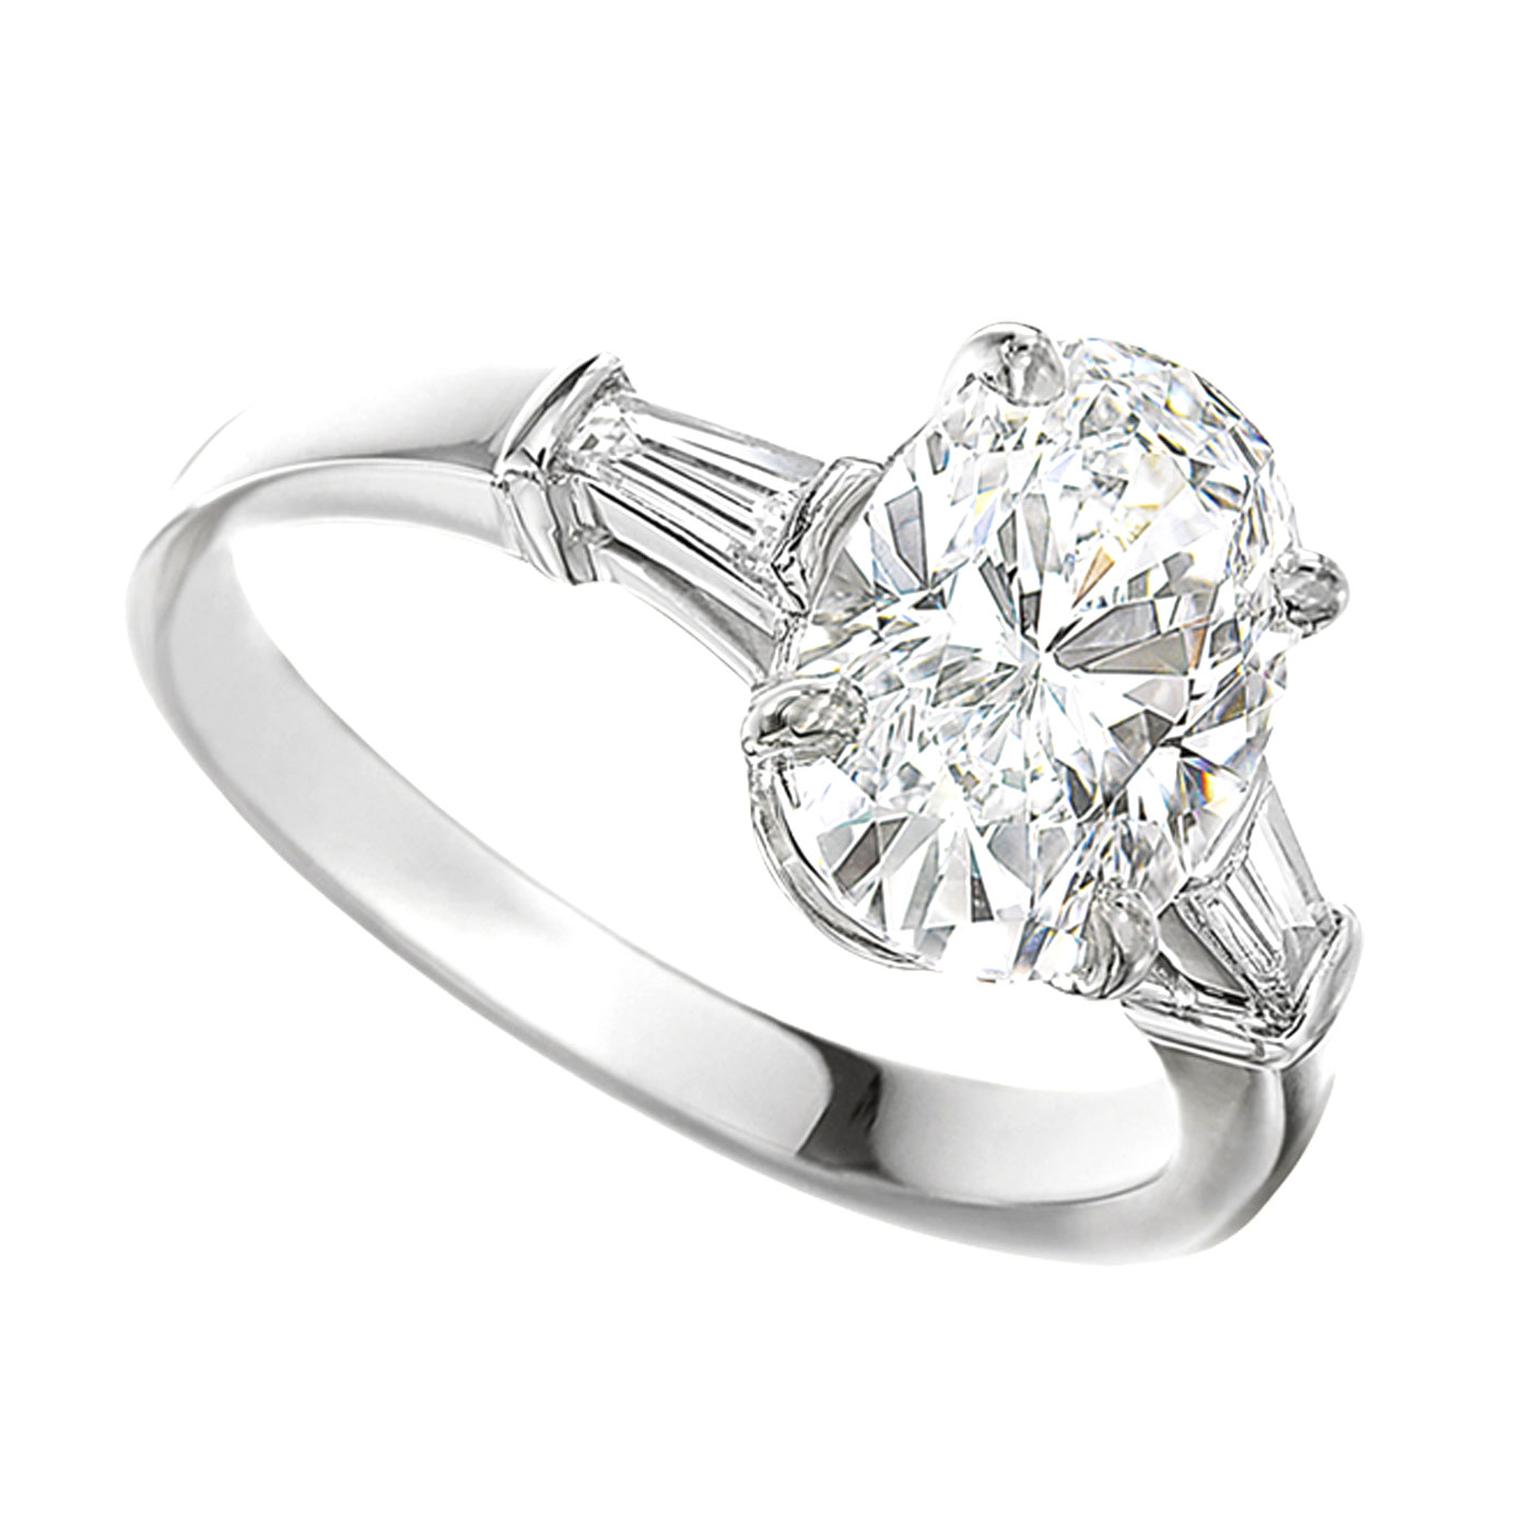 bvlgari heart shaped diamond ring price